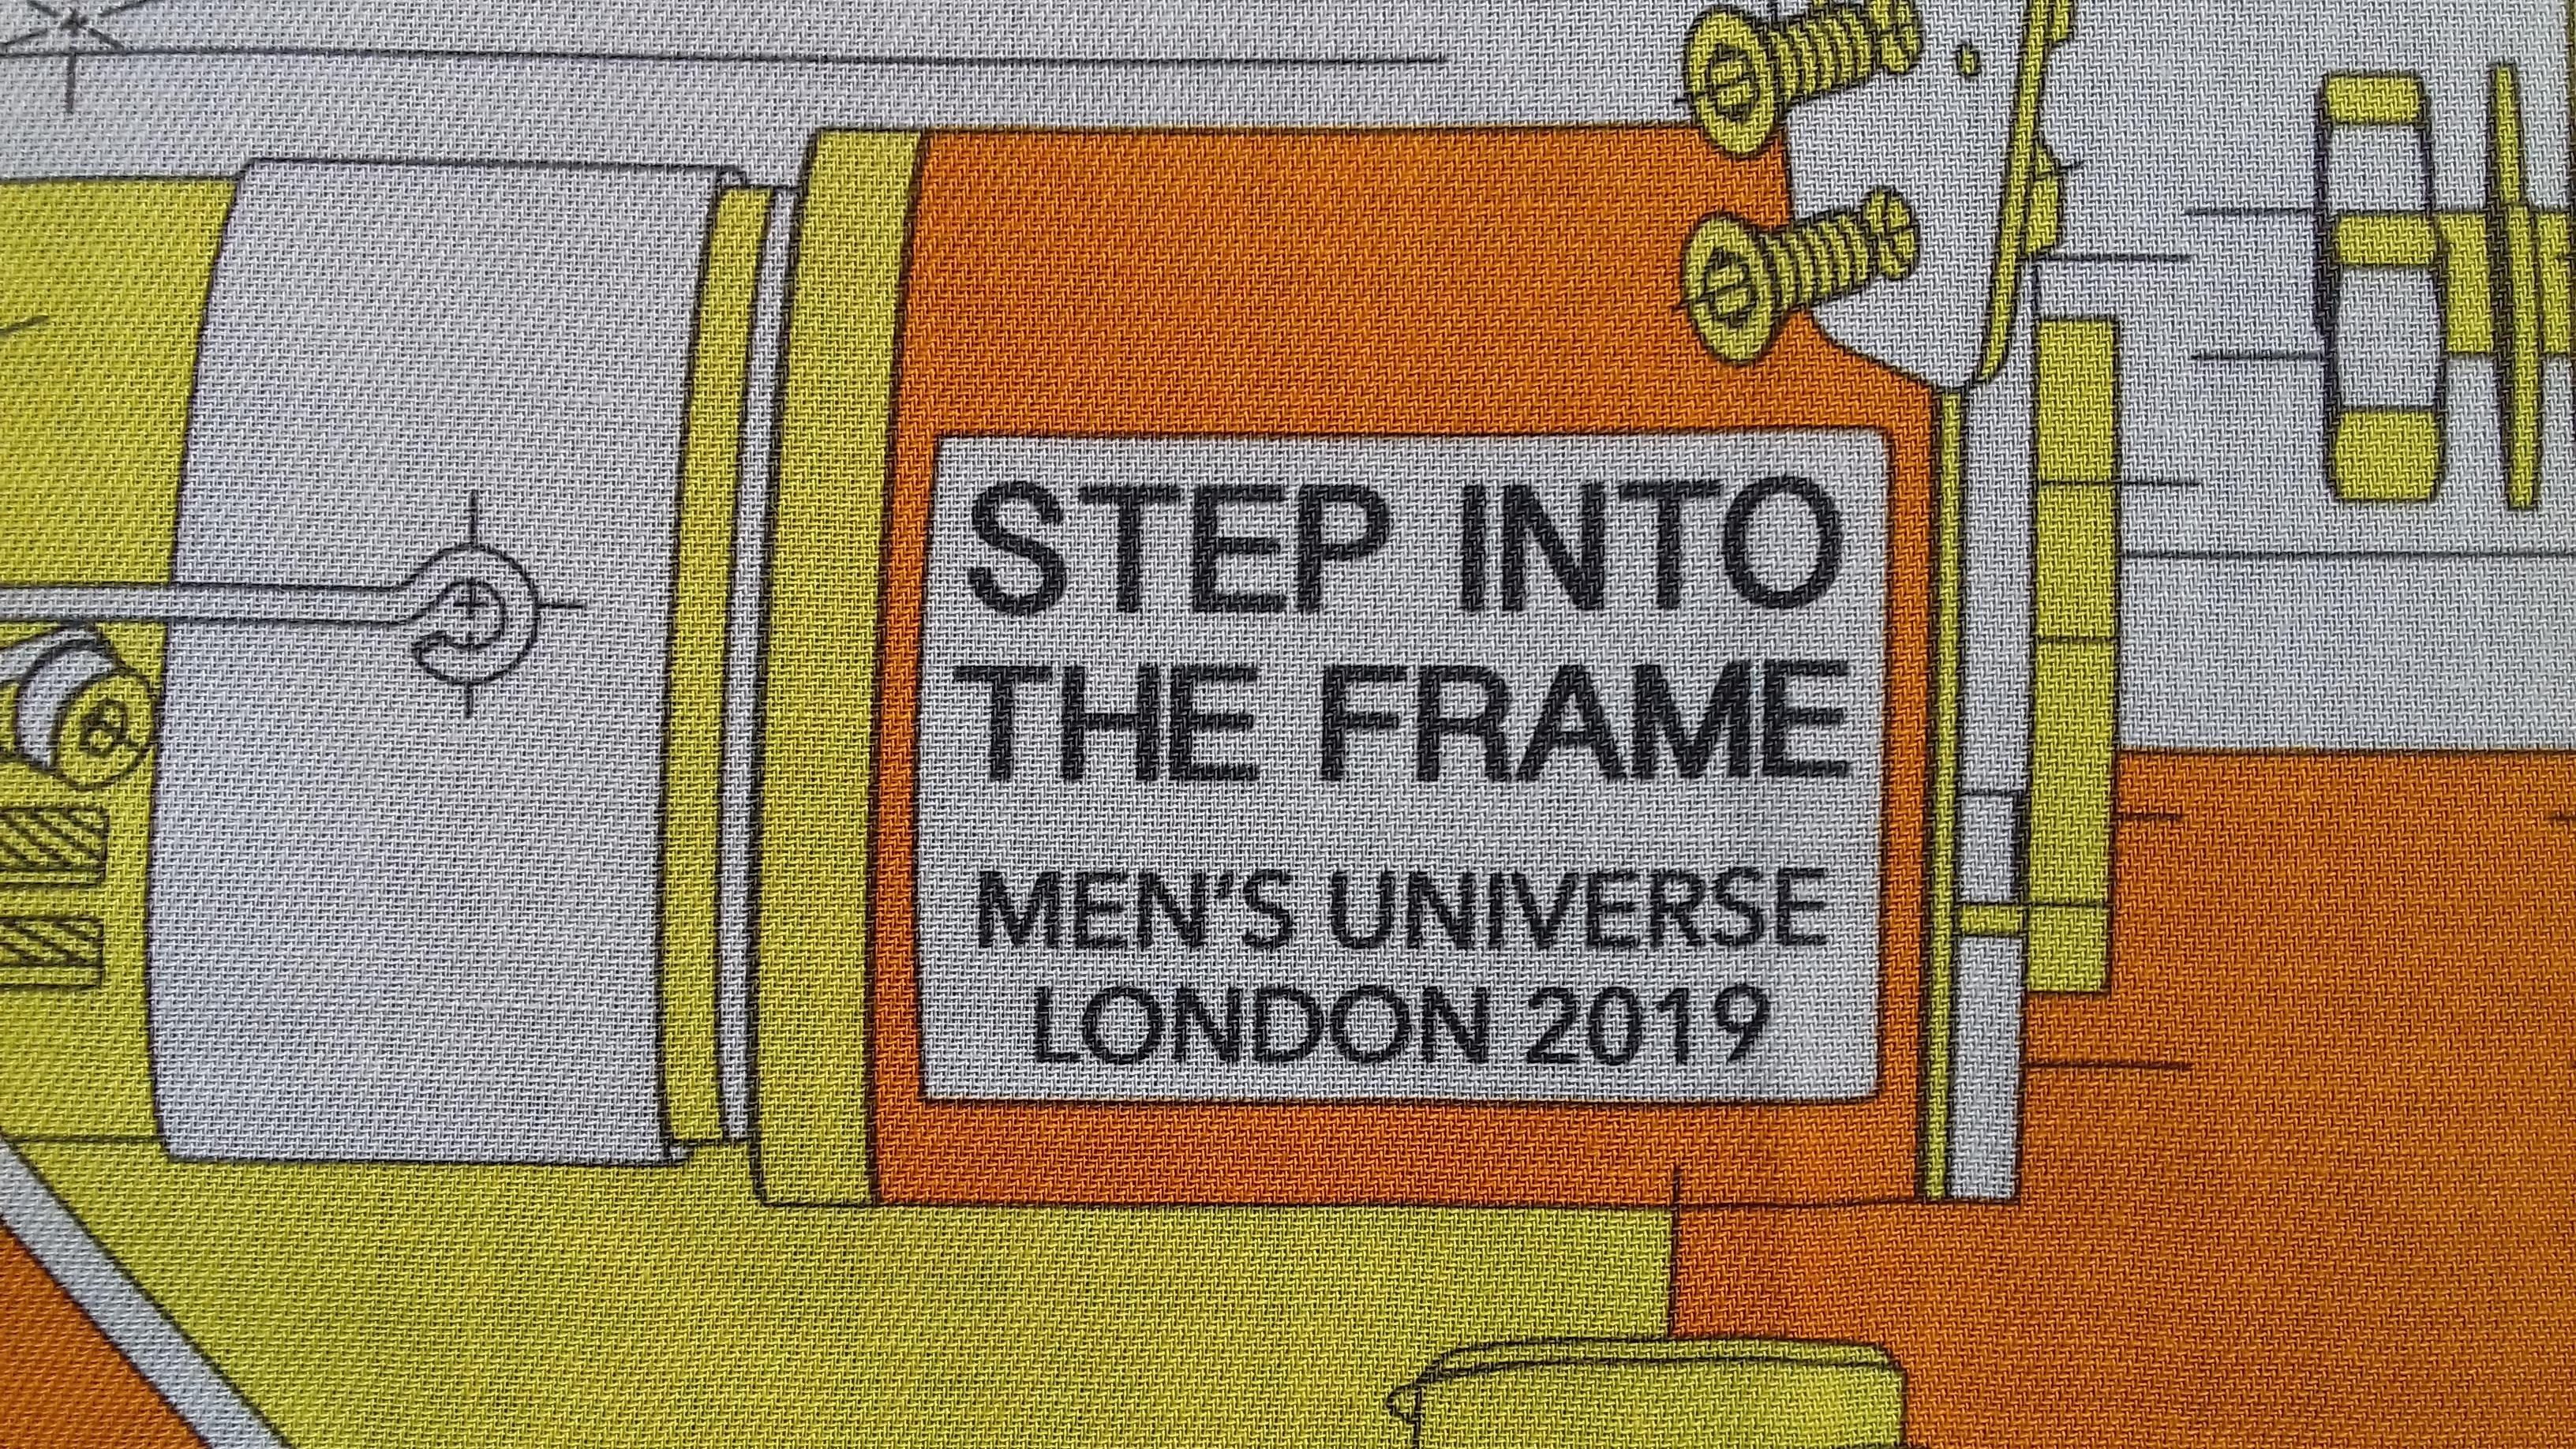 Hermès Baumwollschal Step into the Frame Men's Universe 2019 Gelb Orange 65 cm (Braun)